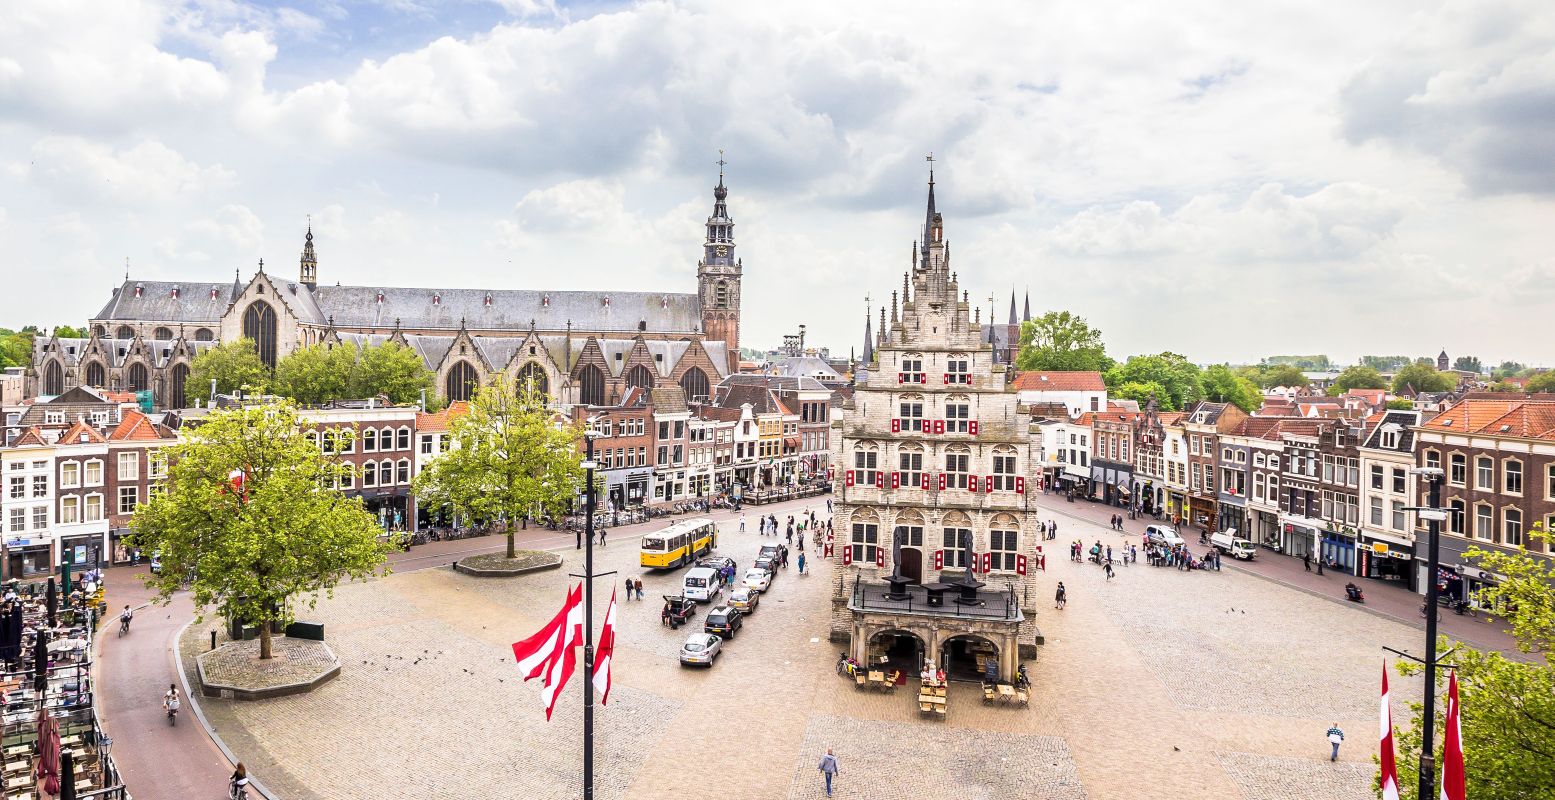 Bezoek dan de Markt met het sprookjesachtige Stadhuis. Op de achtergrond de Sint-Janskerk, de langste kerk van Nederland. Foto: VVV Gouda